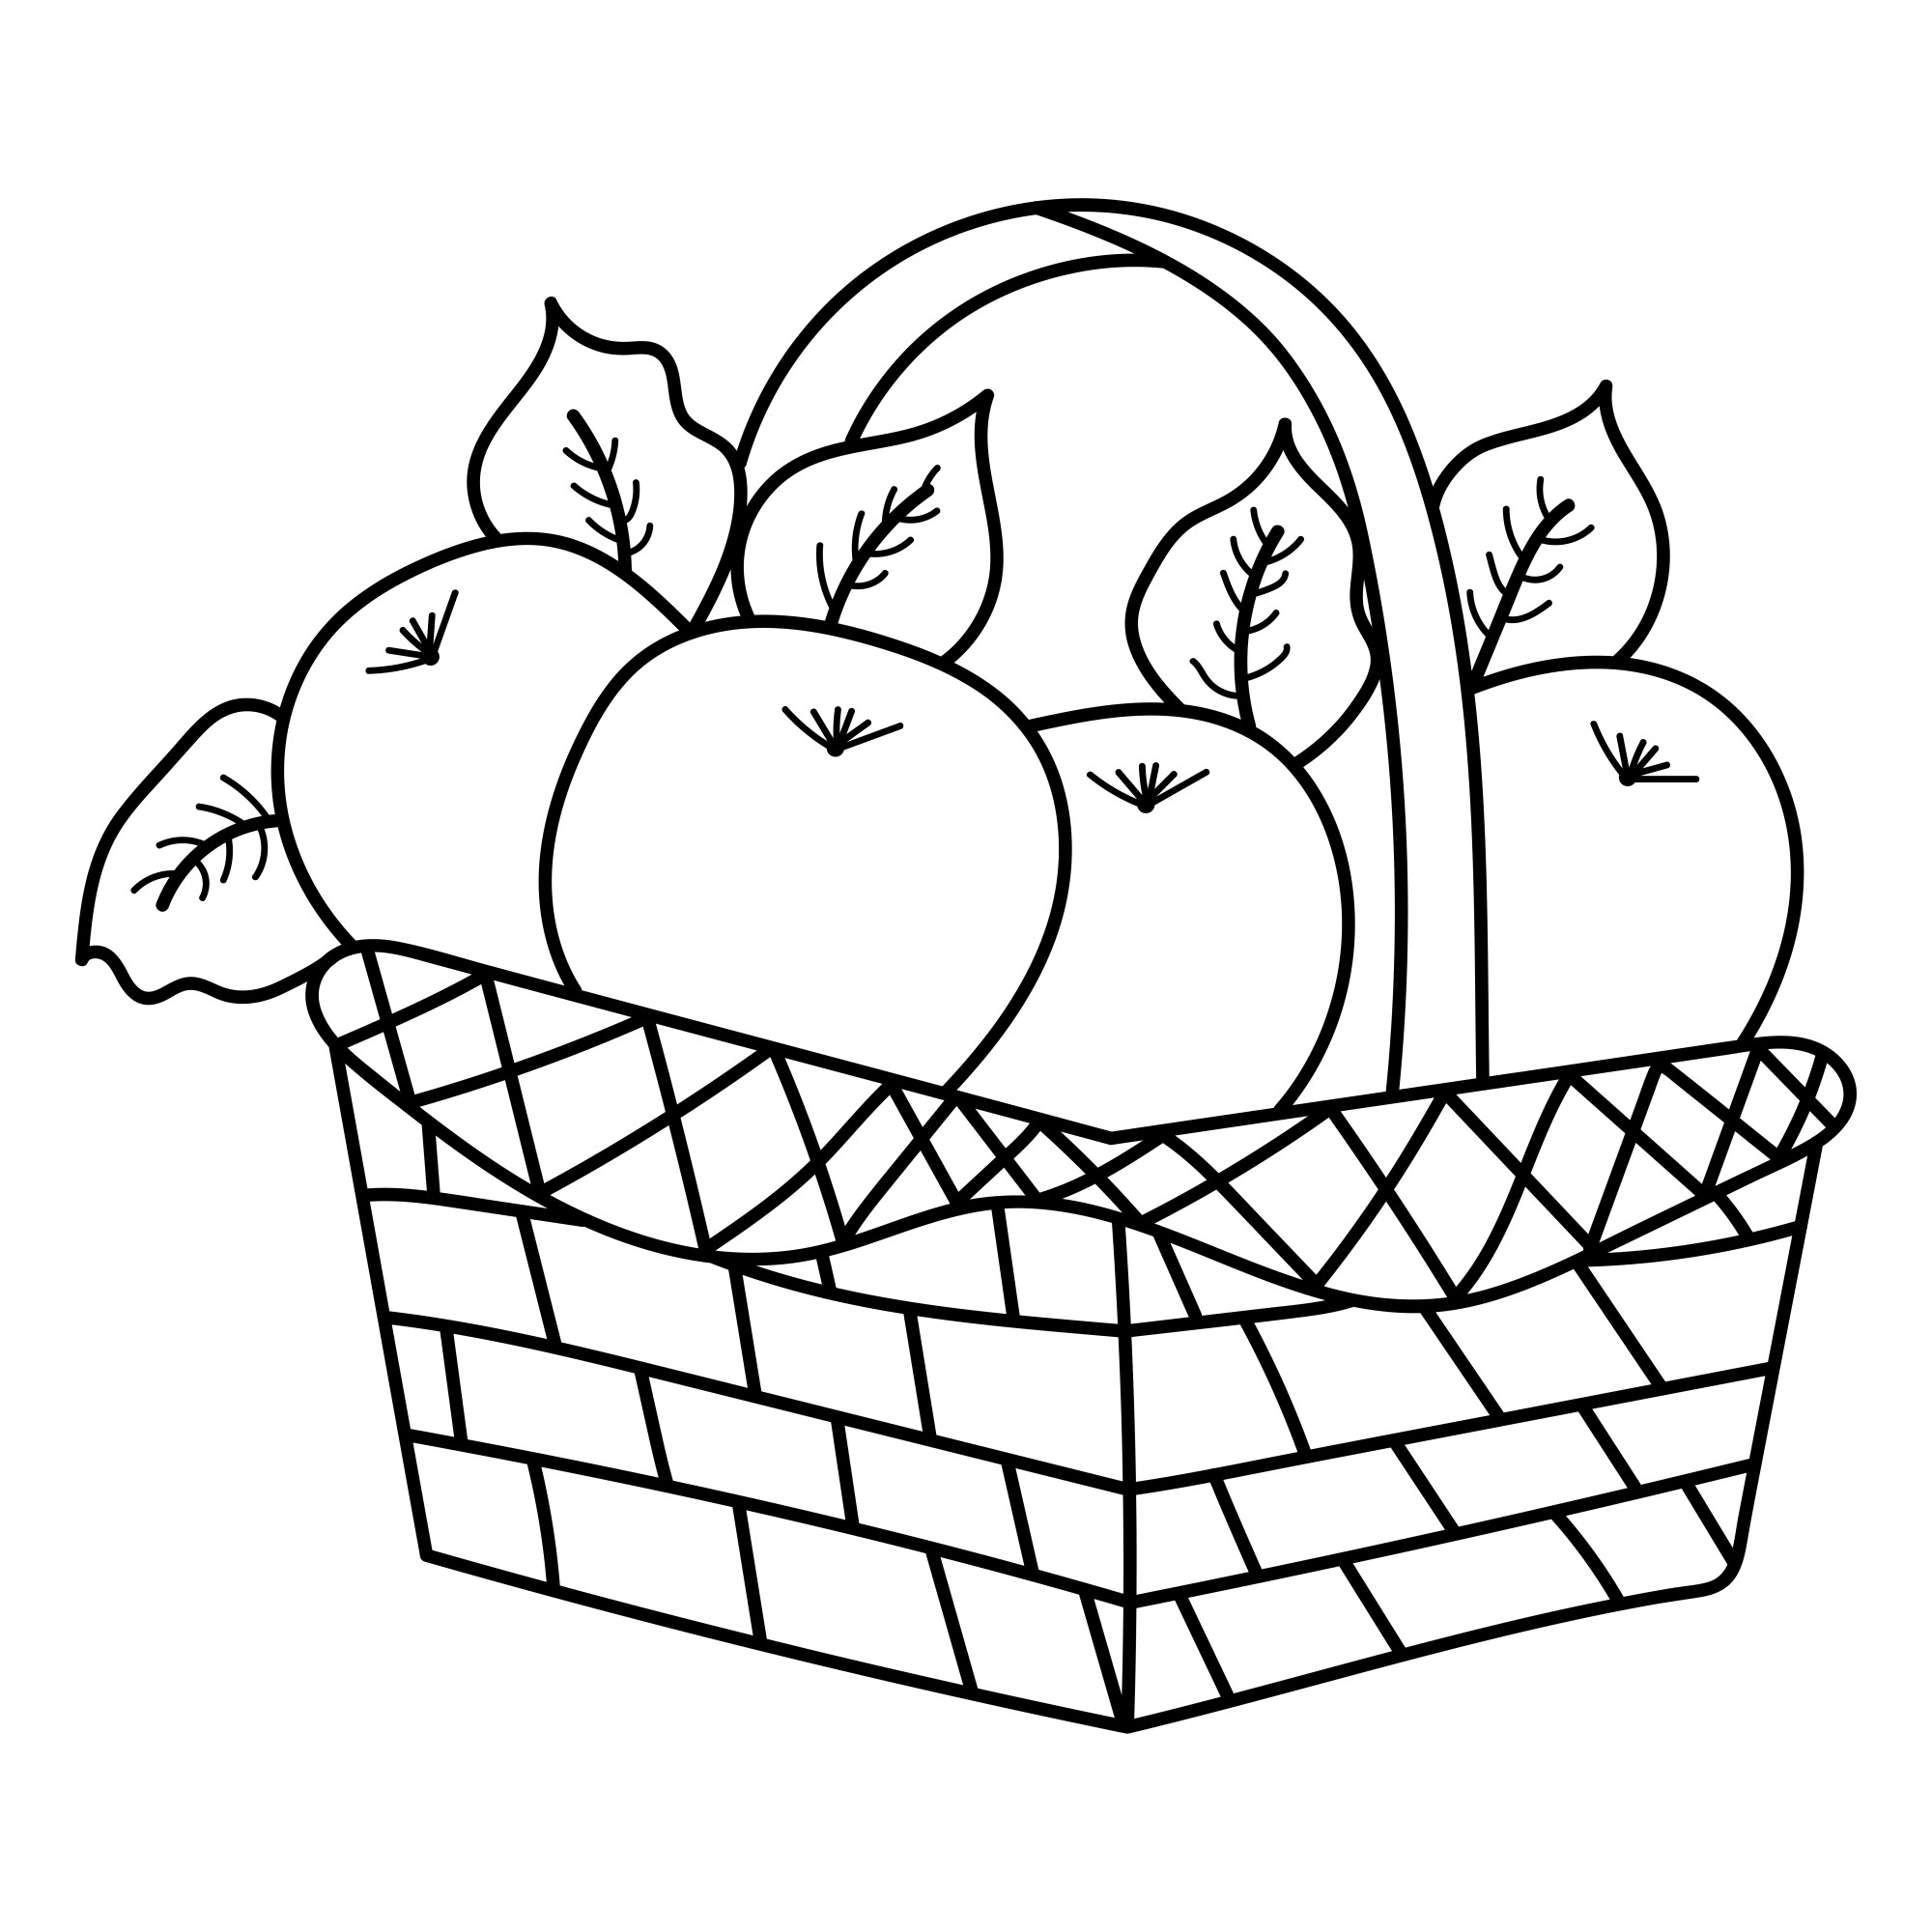 Раскраска для детей: спелые яблоки в корзинке